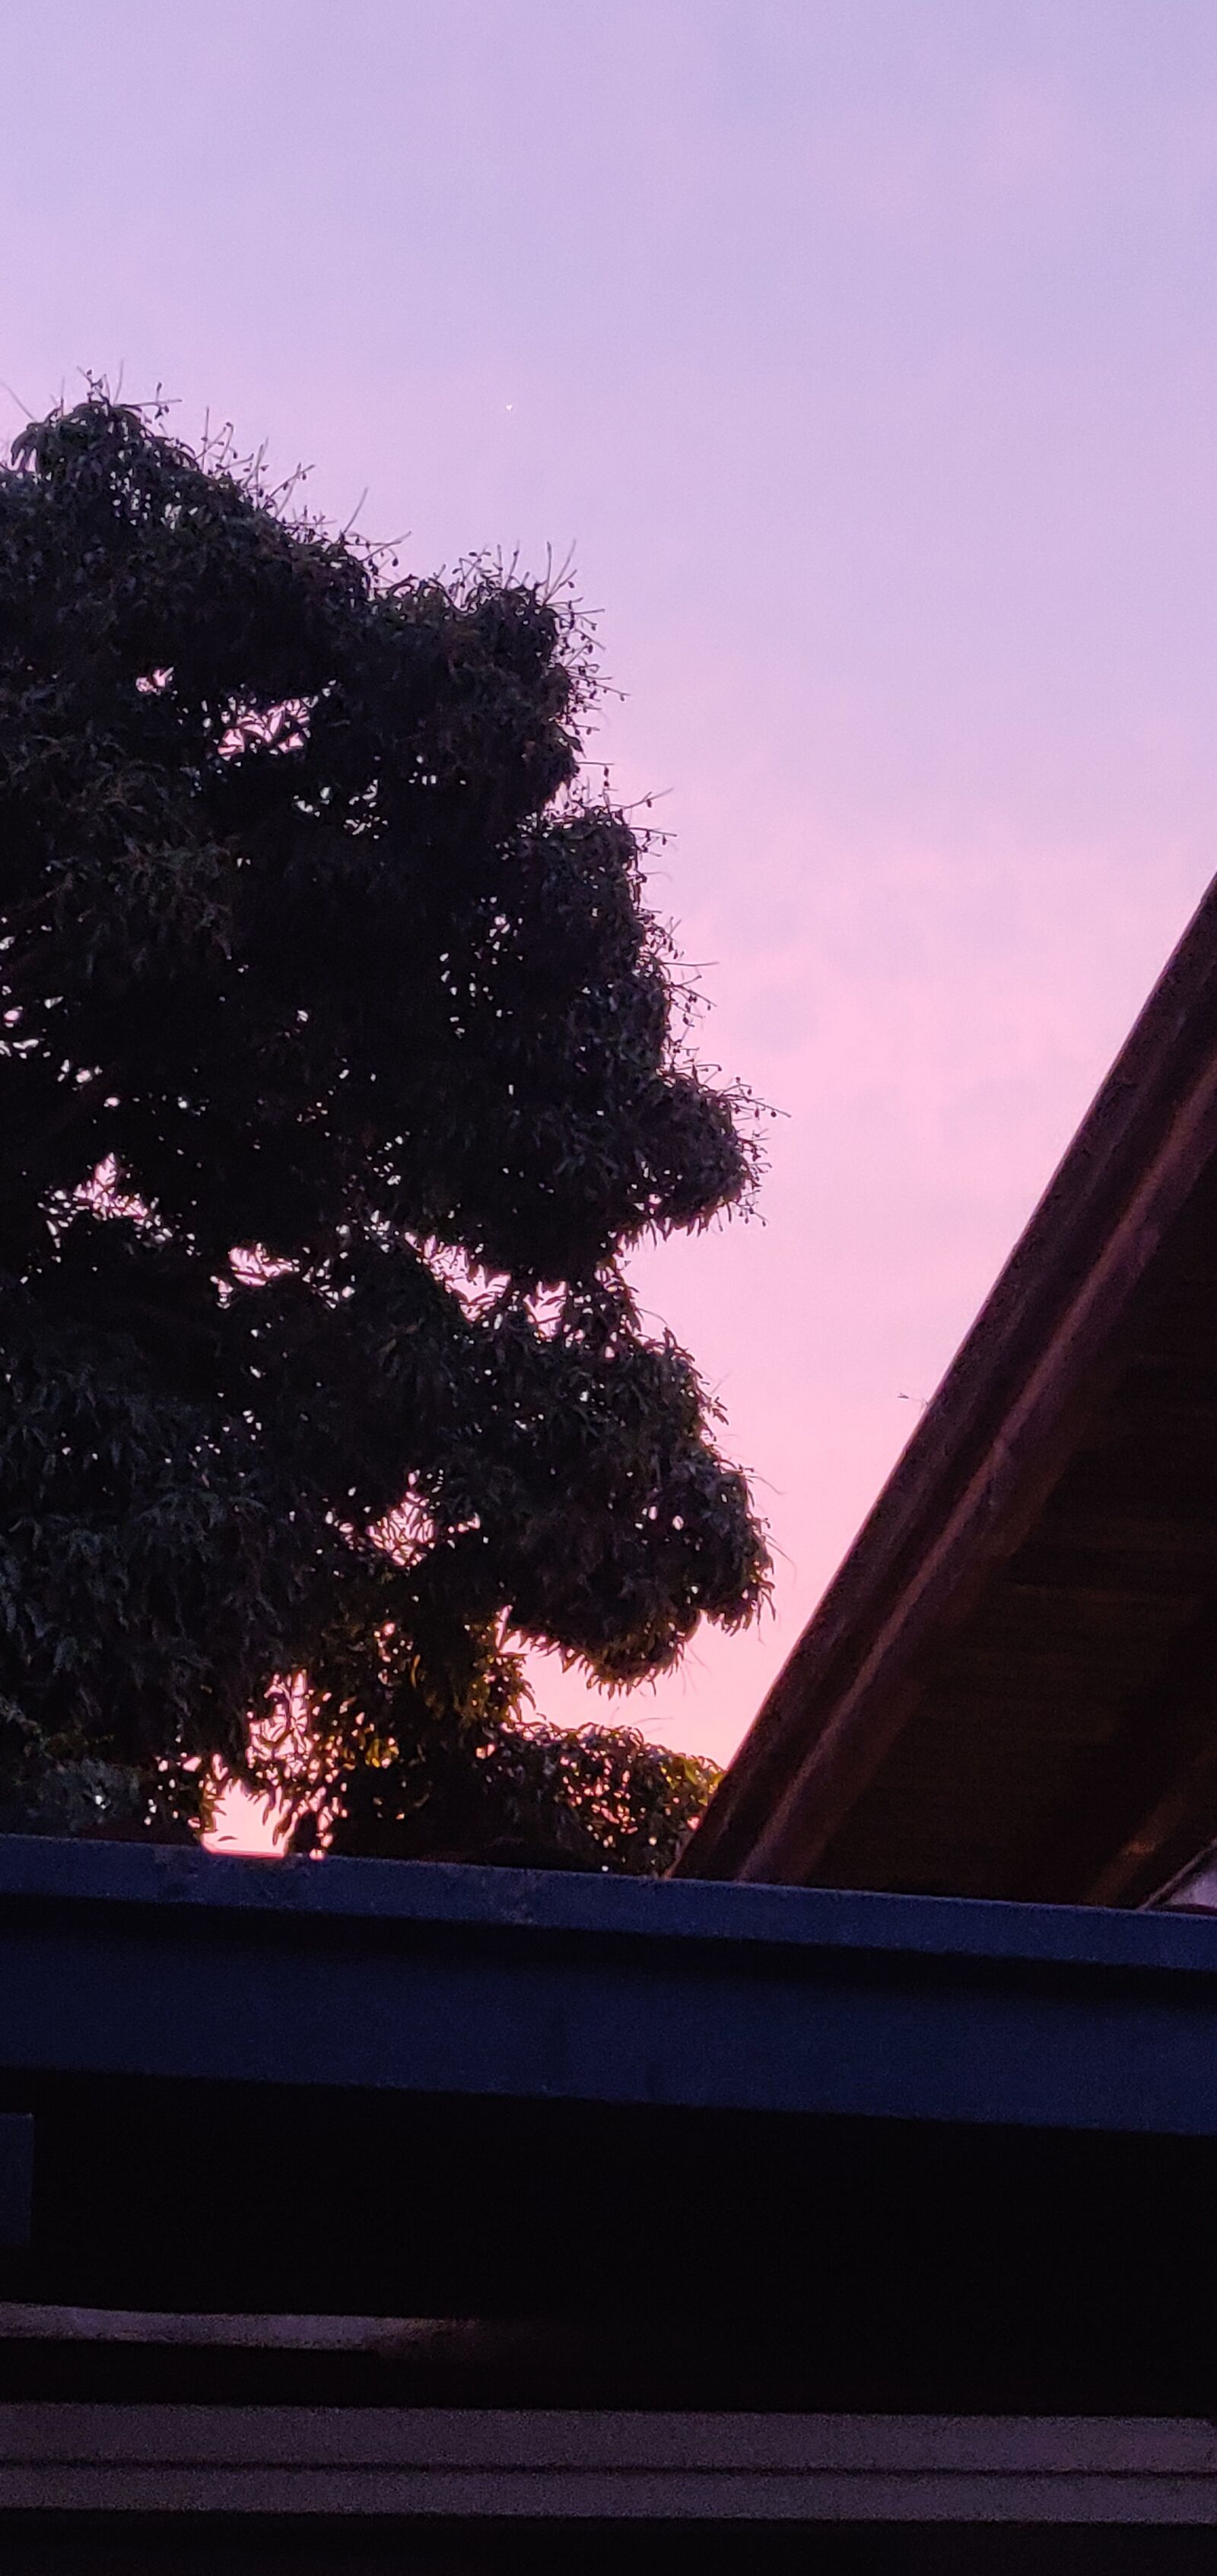 OnePlus 6 sample photo. Sunset, tropic, mango photography